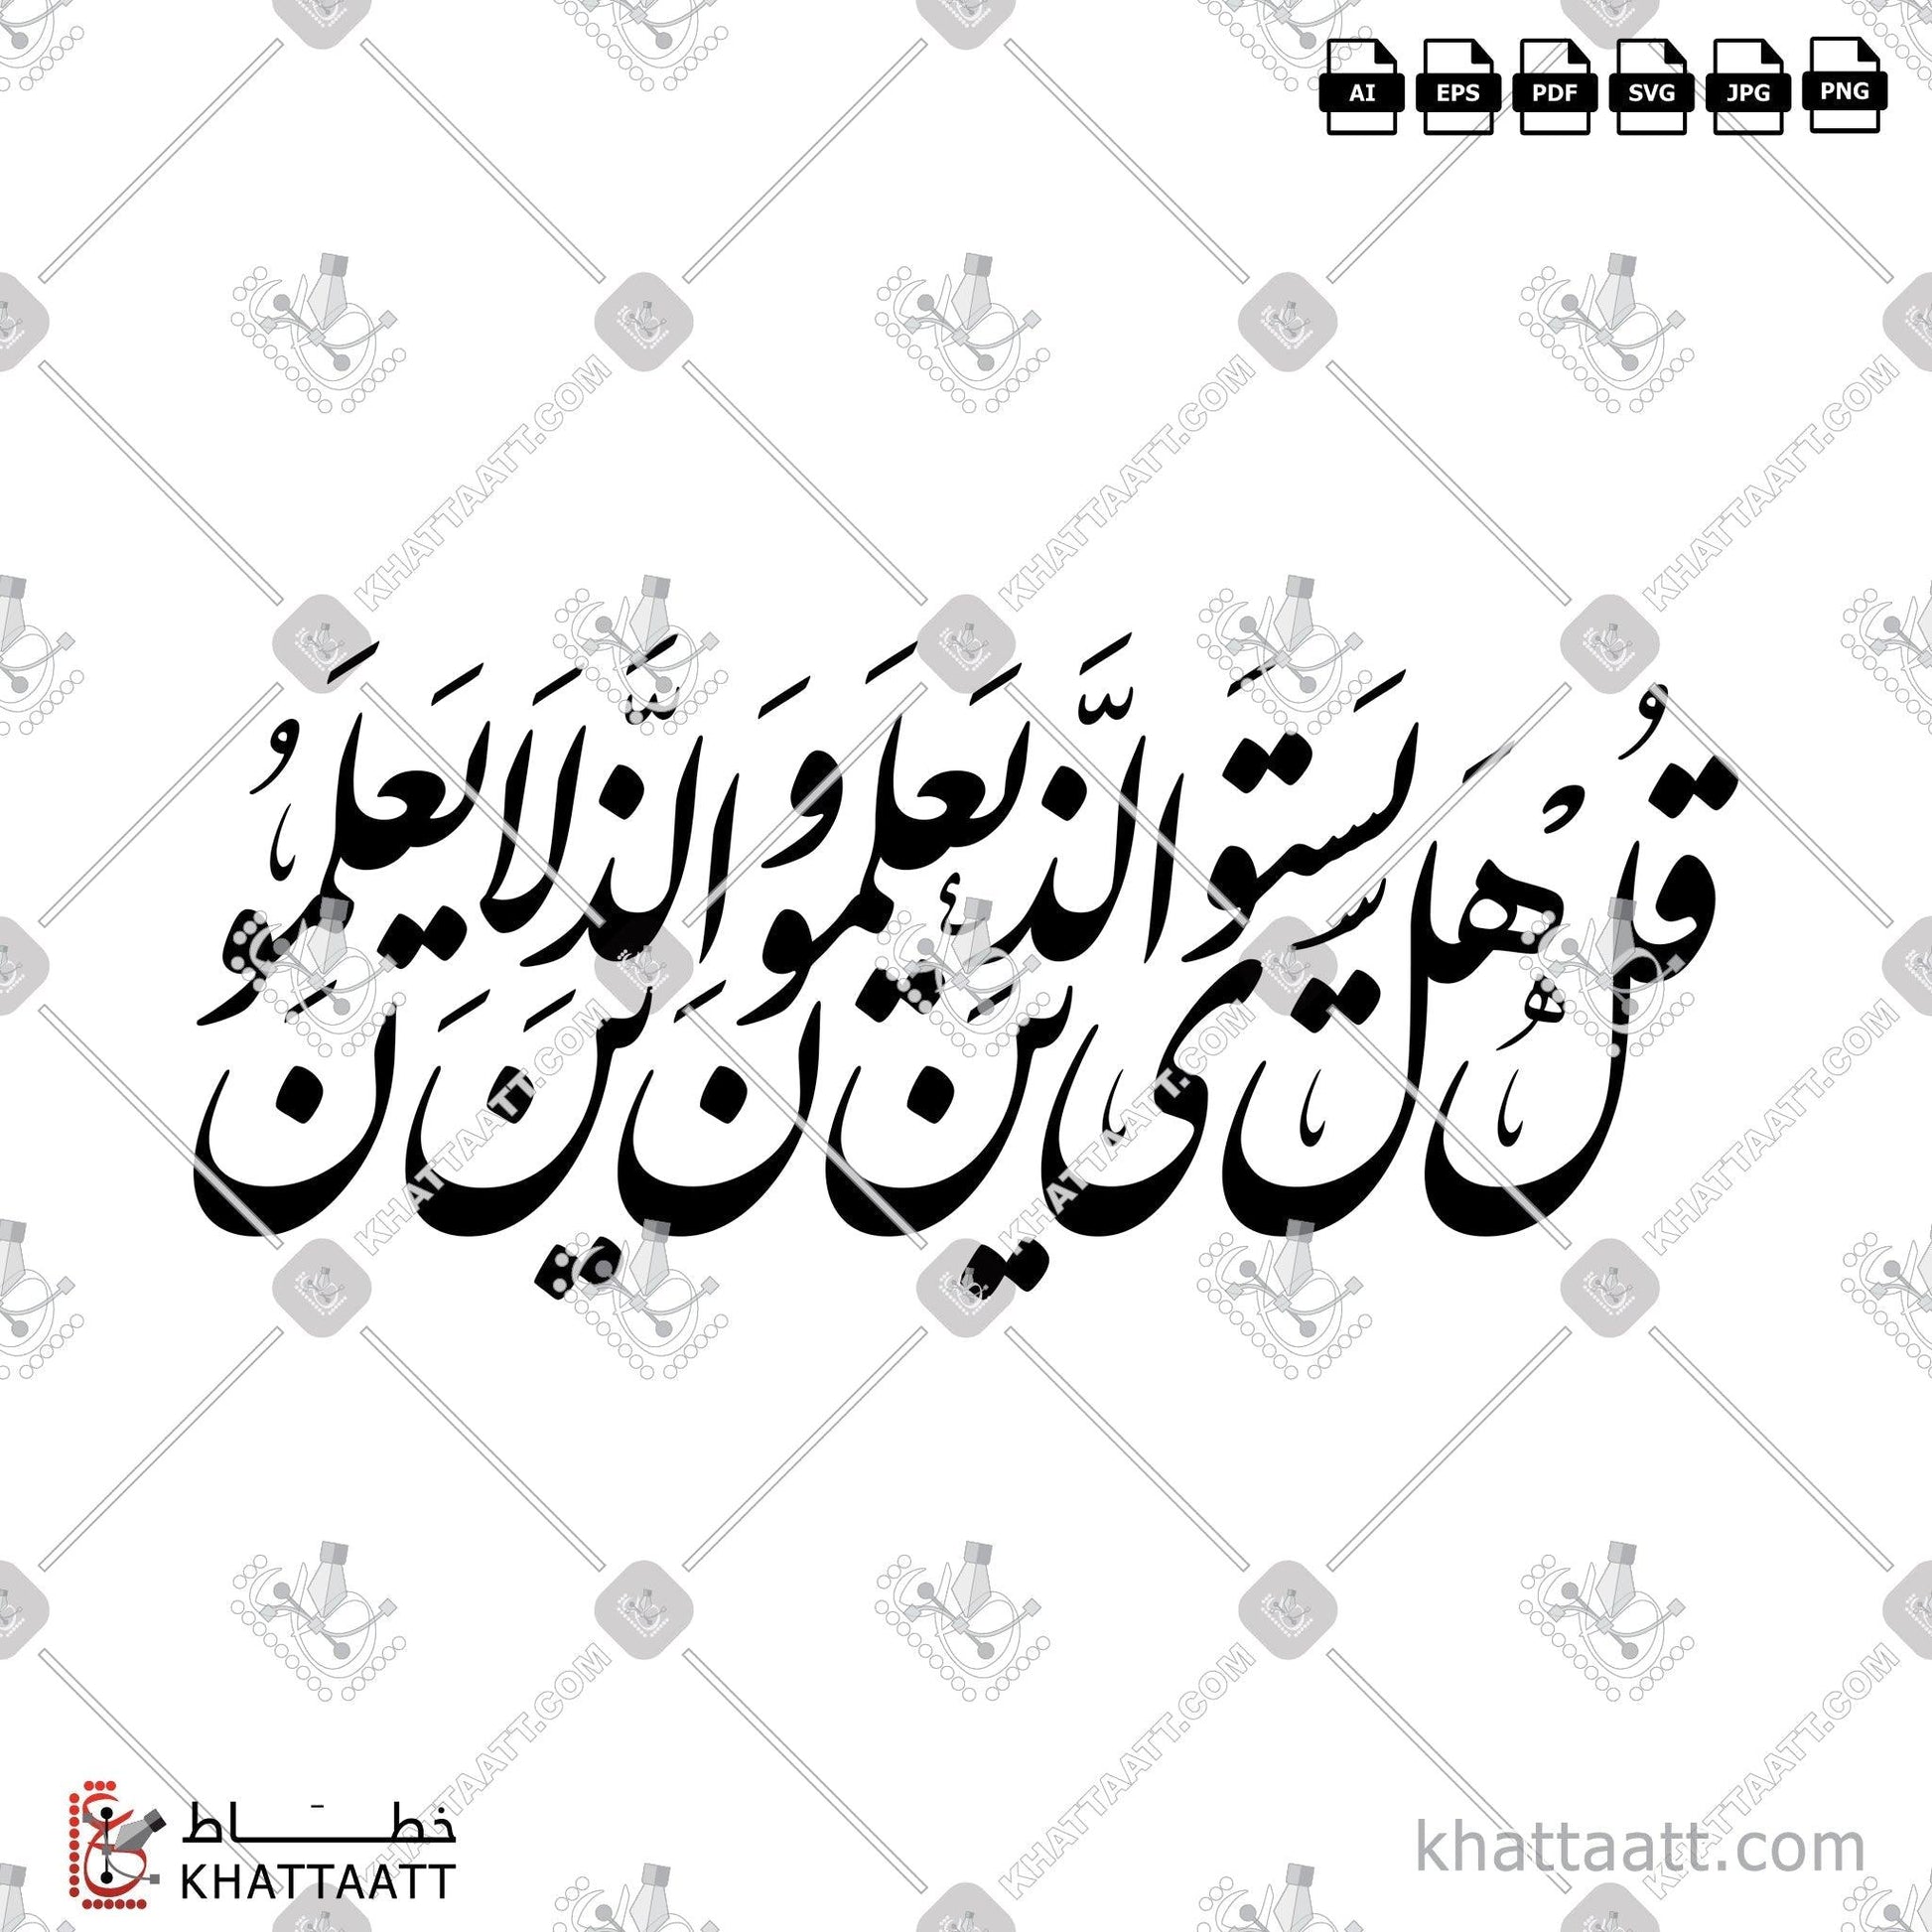 Download Arabic Calligraphy of قل هل يستوي الذين يعلمون والذين لا يعلمون in Farsi - الخط الفارسي in vector and .png